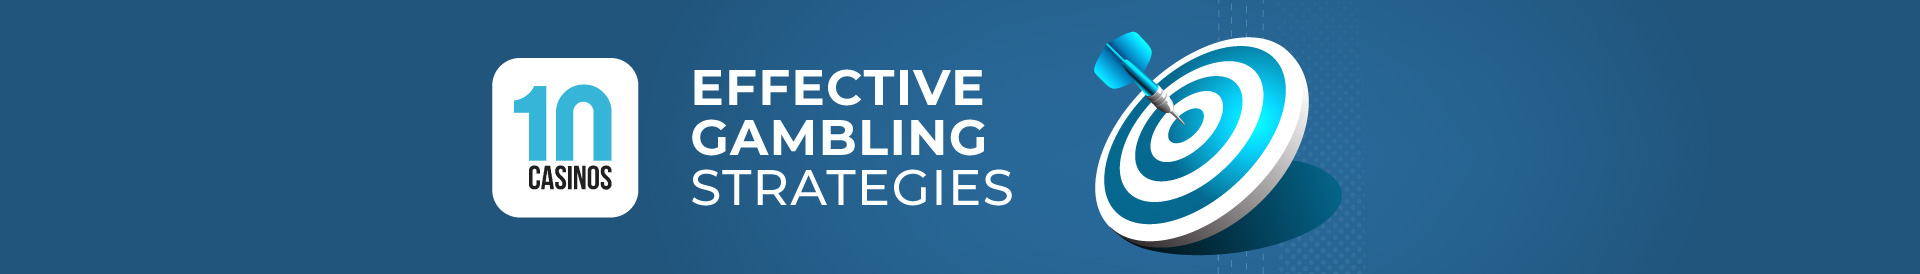 top 10 effective gambling strategies desktop